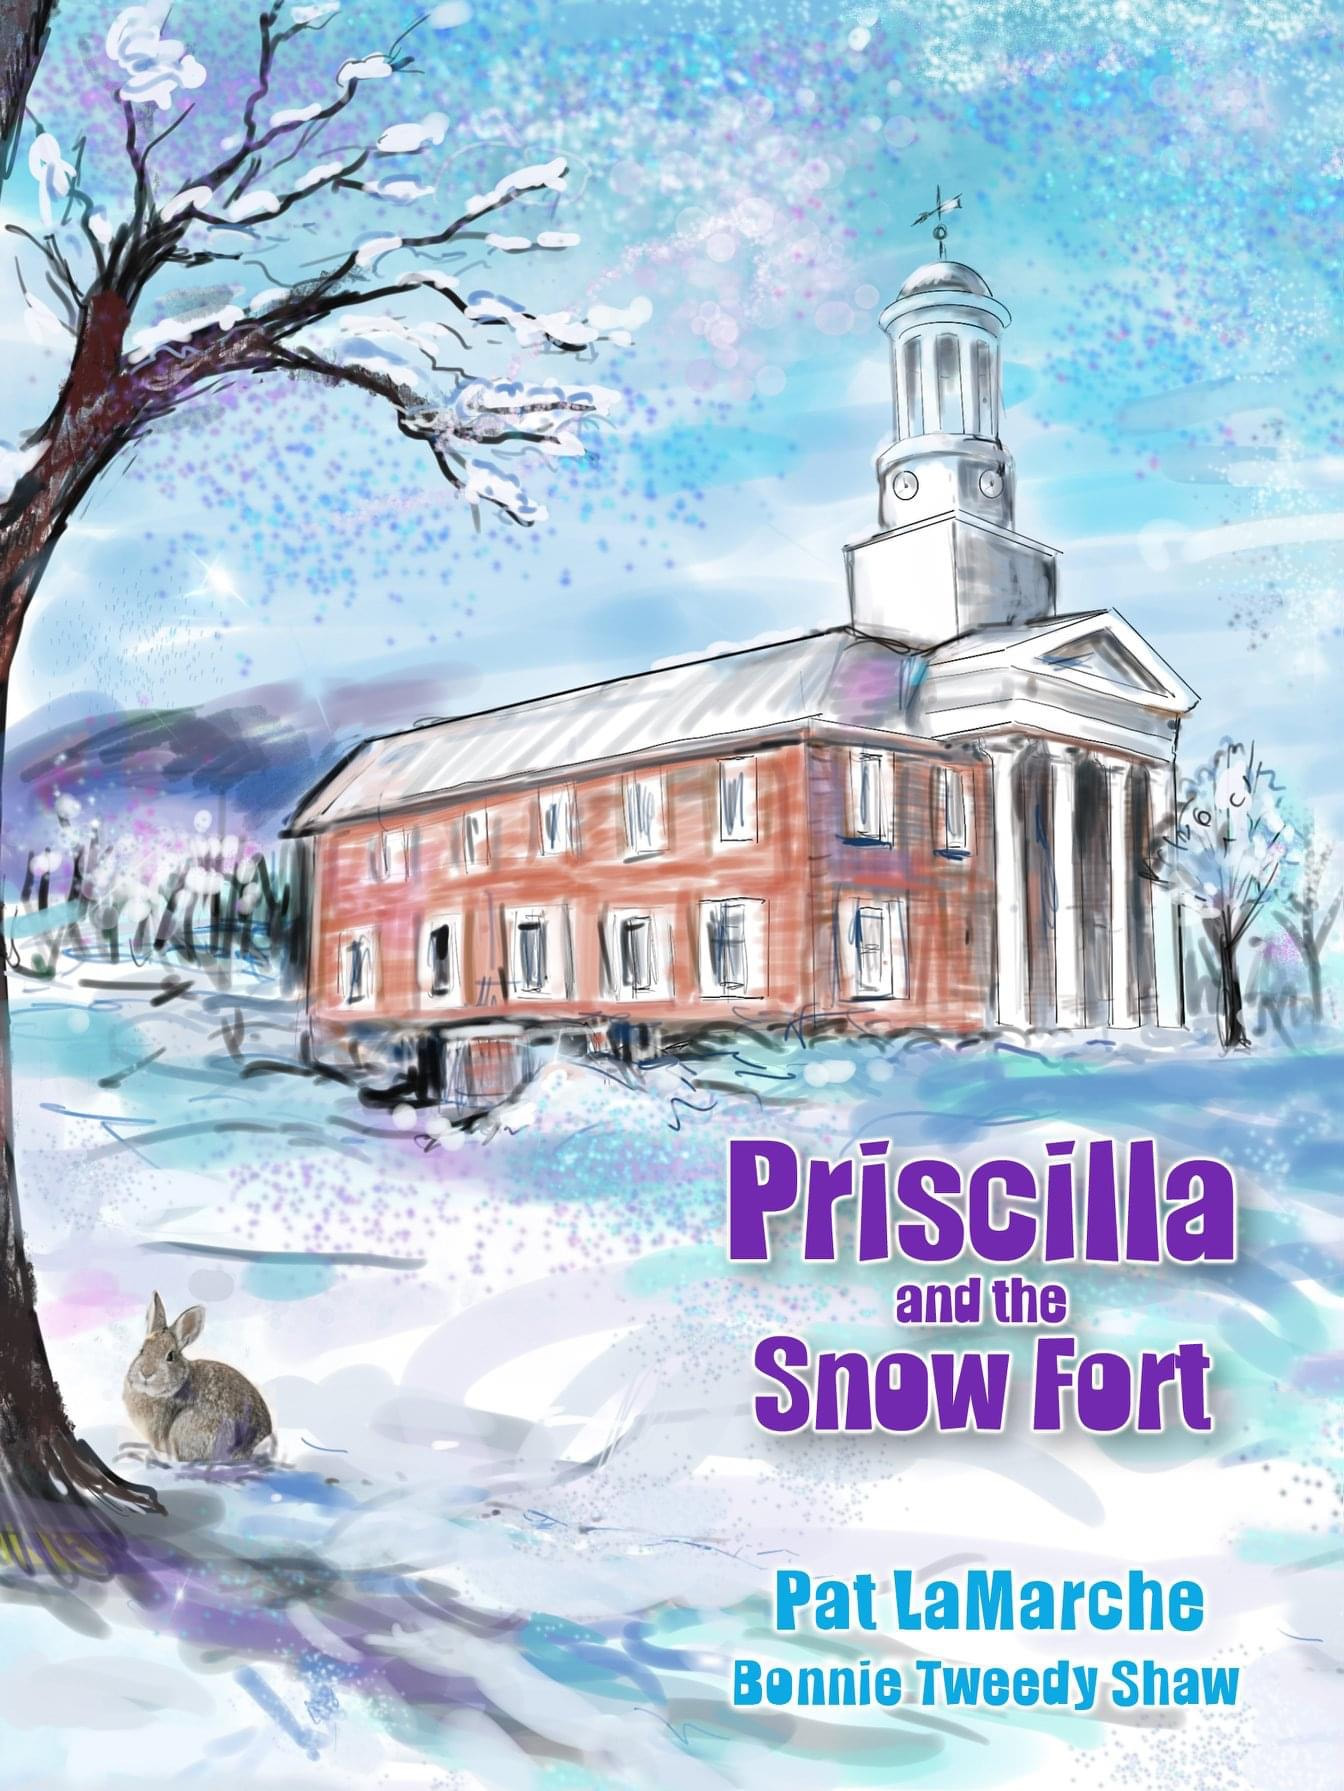 Priscilla snow fort cover